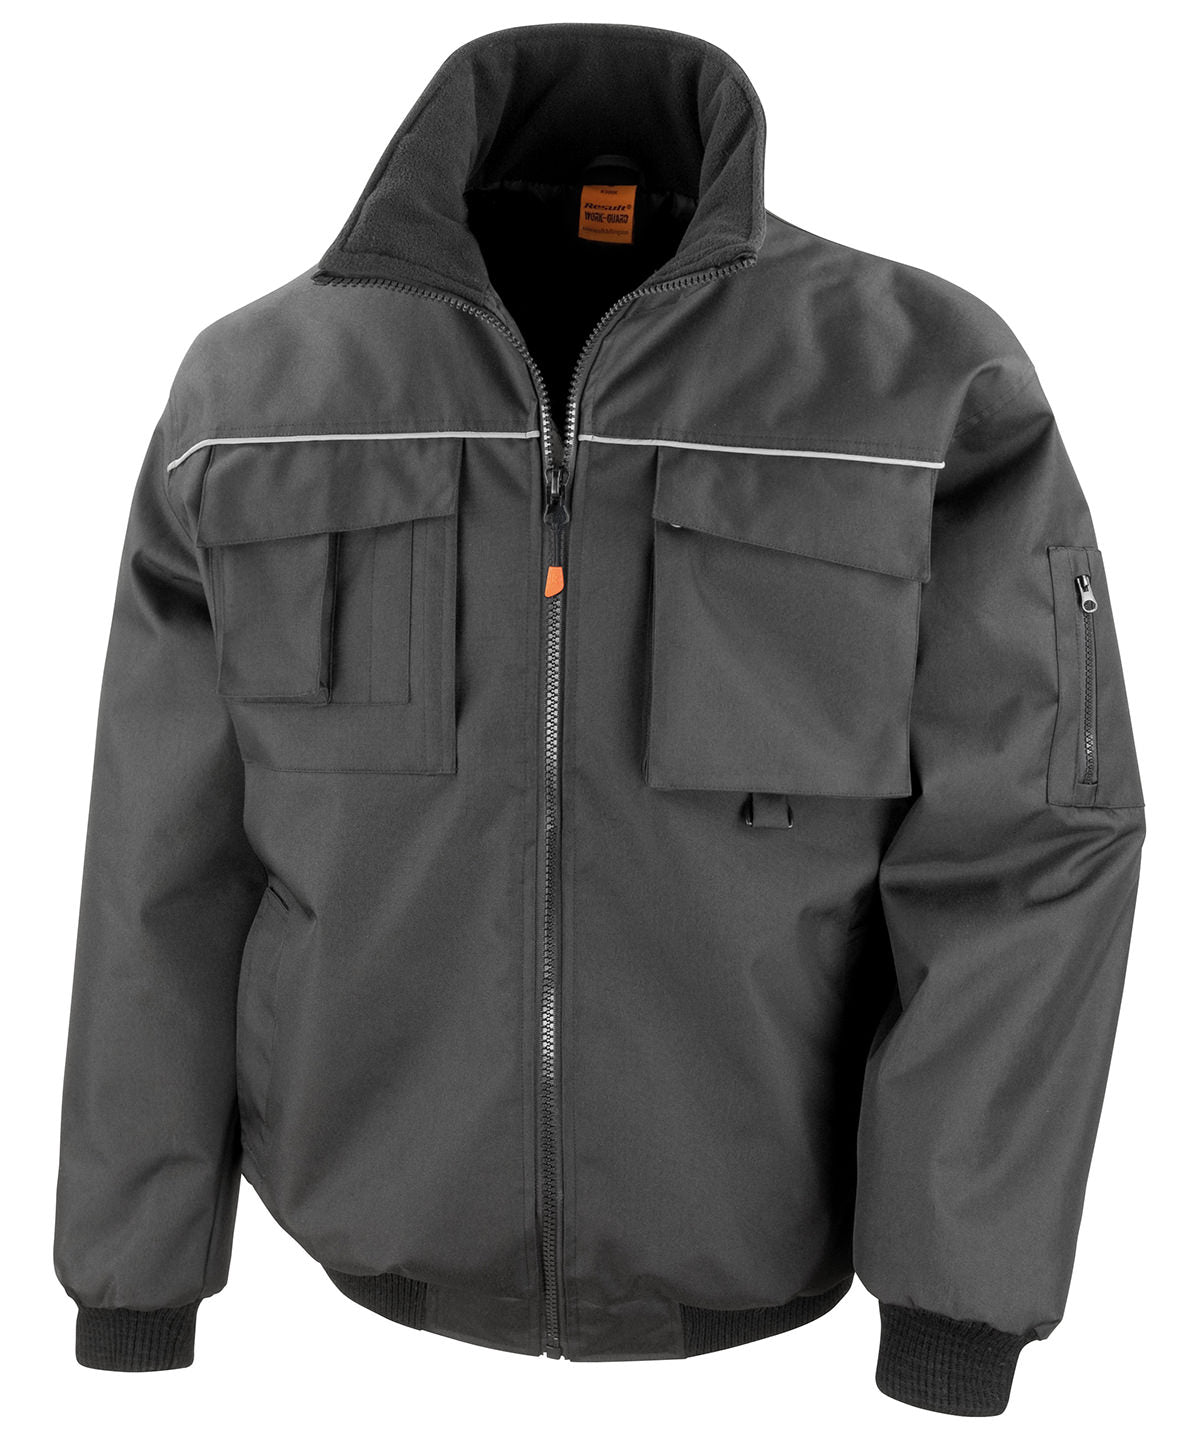 Personalised Jackets - Black Result Workguard Work-Guard Sabre pilot jacket